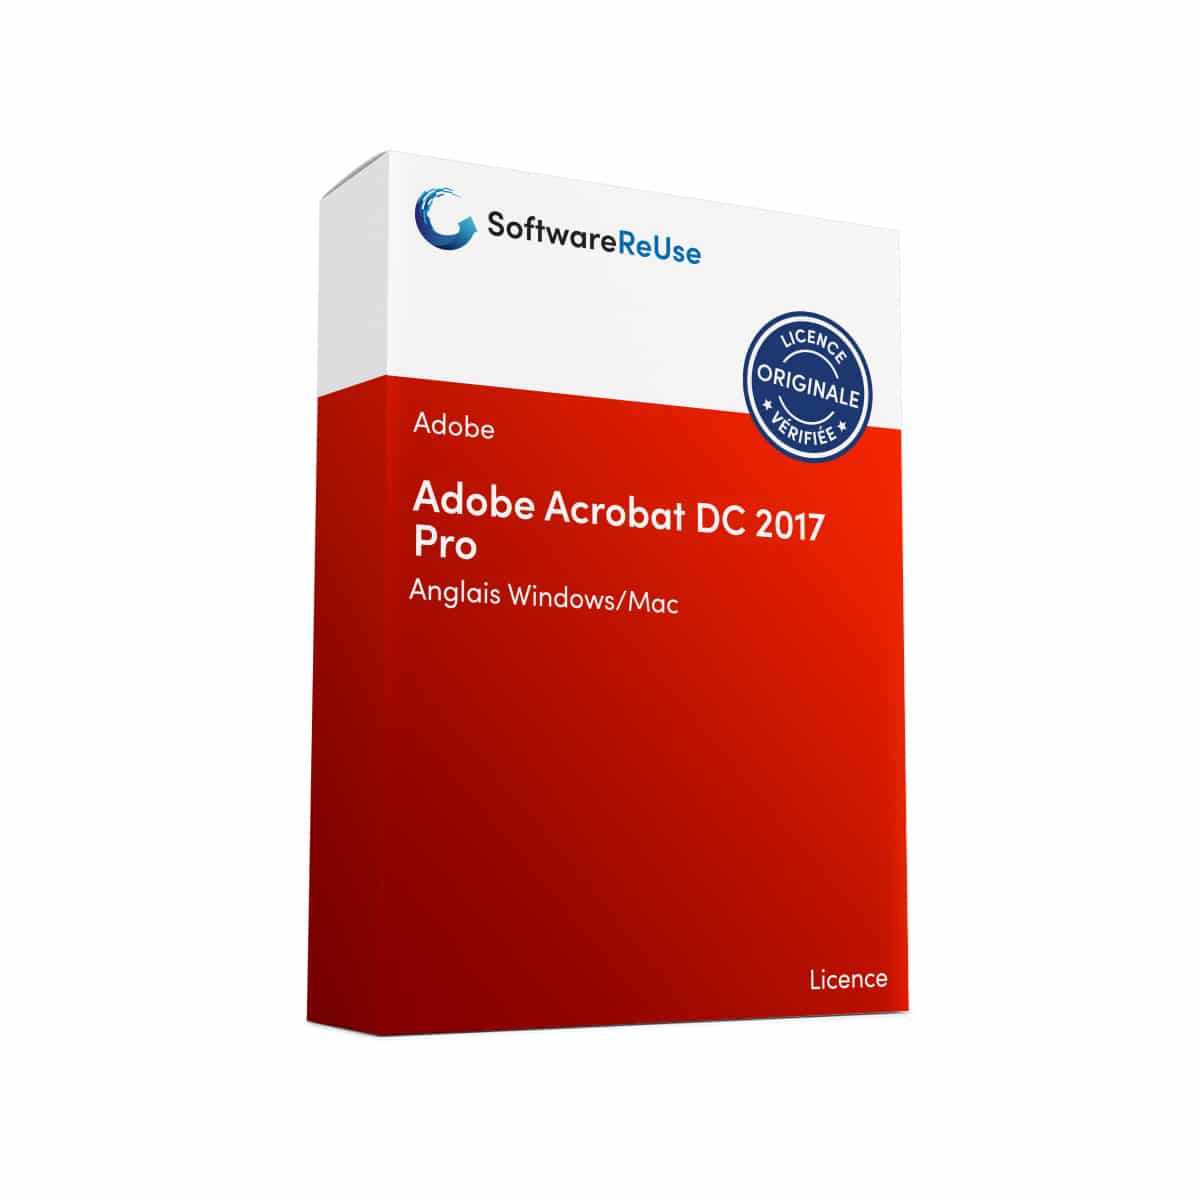 Adobe Acrobat DC 2017 Pro 3